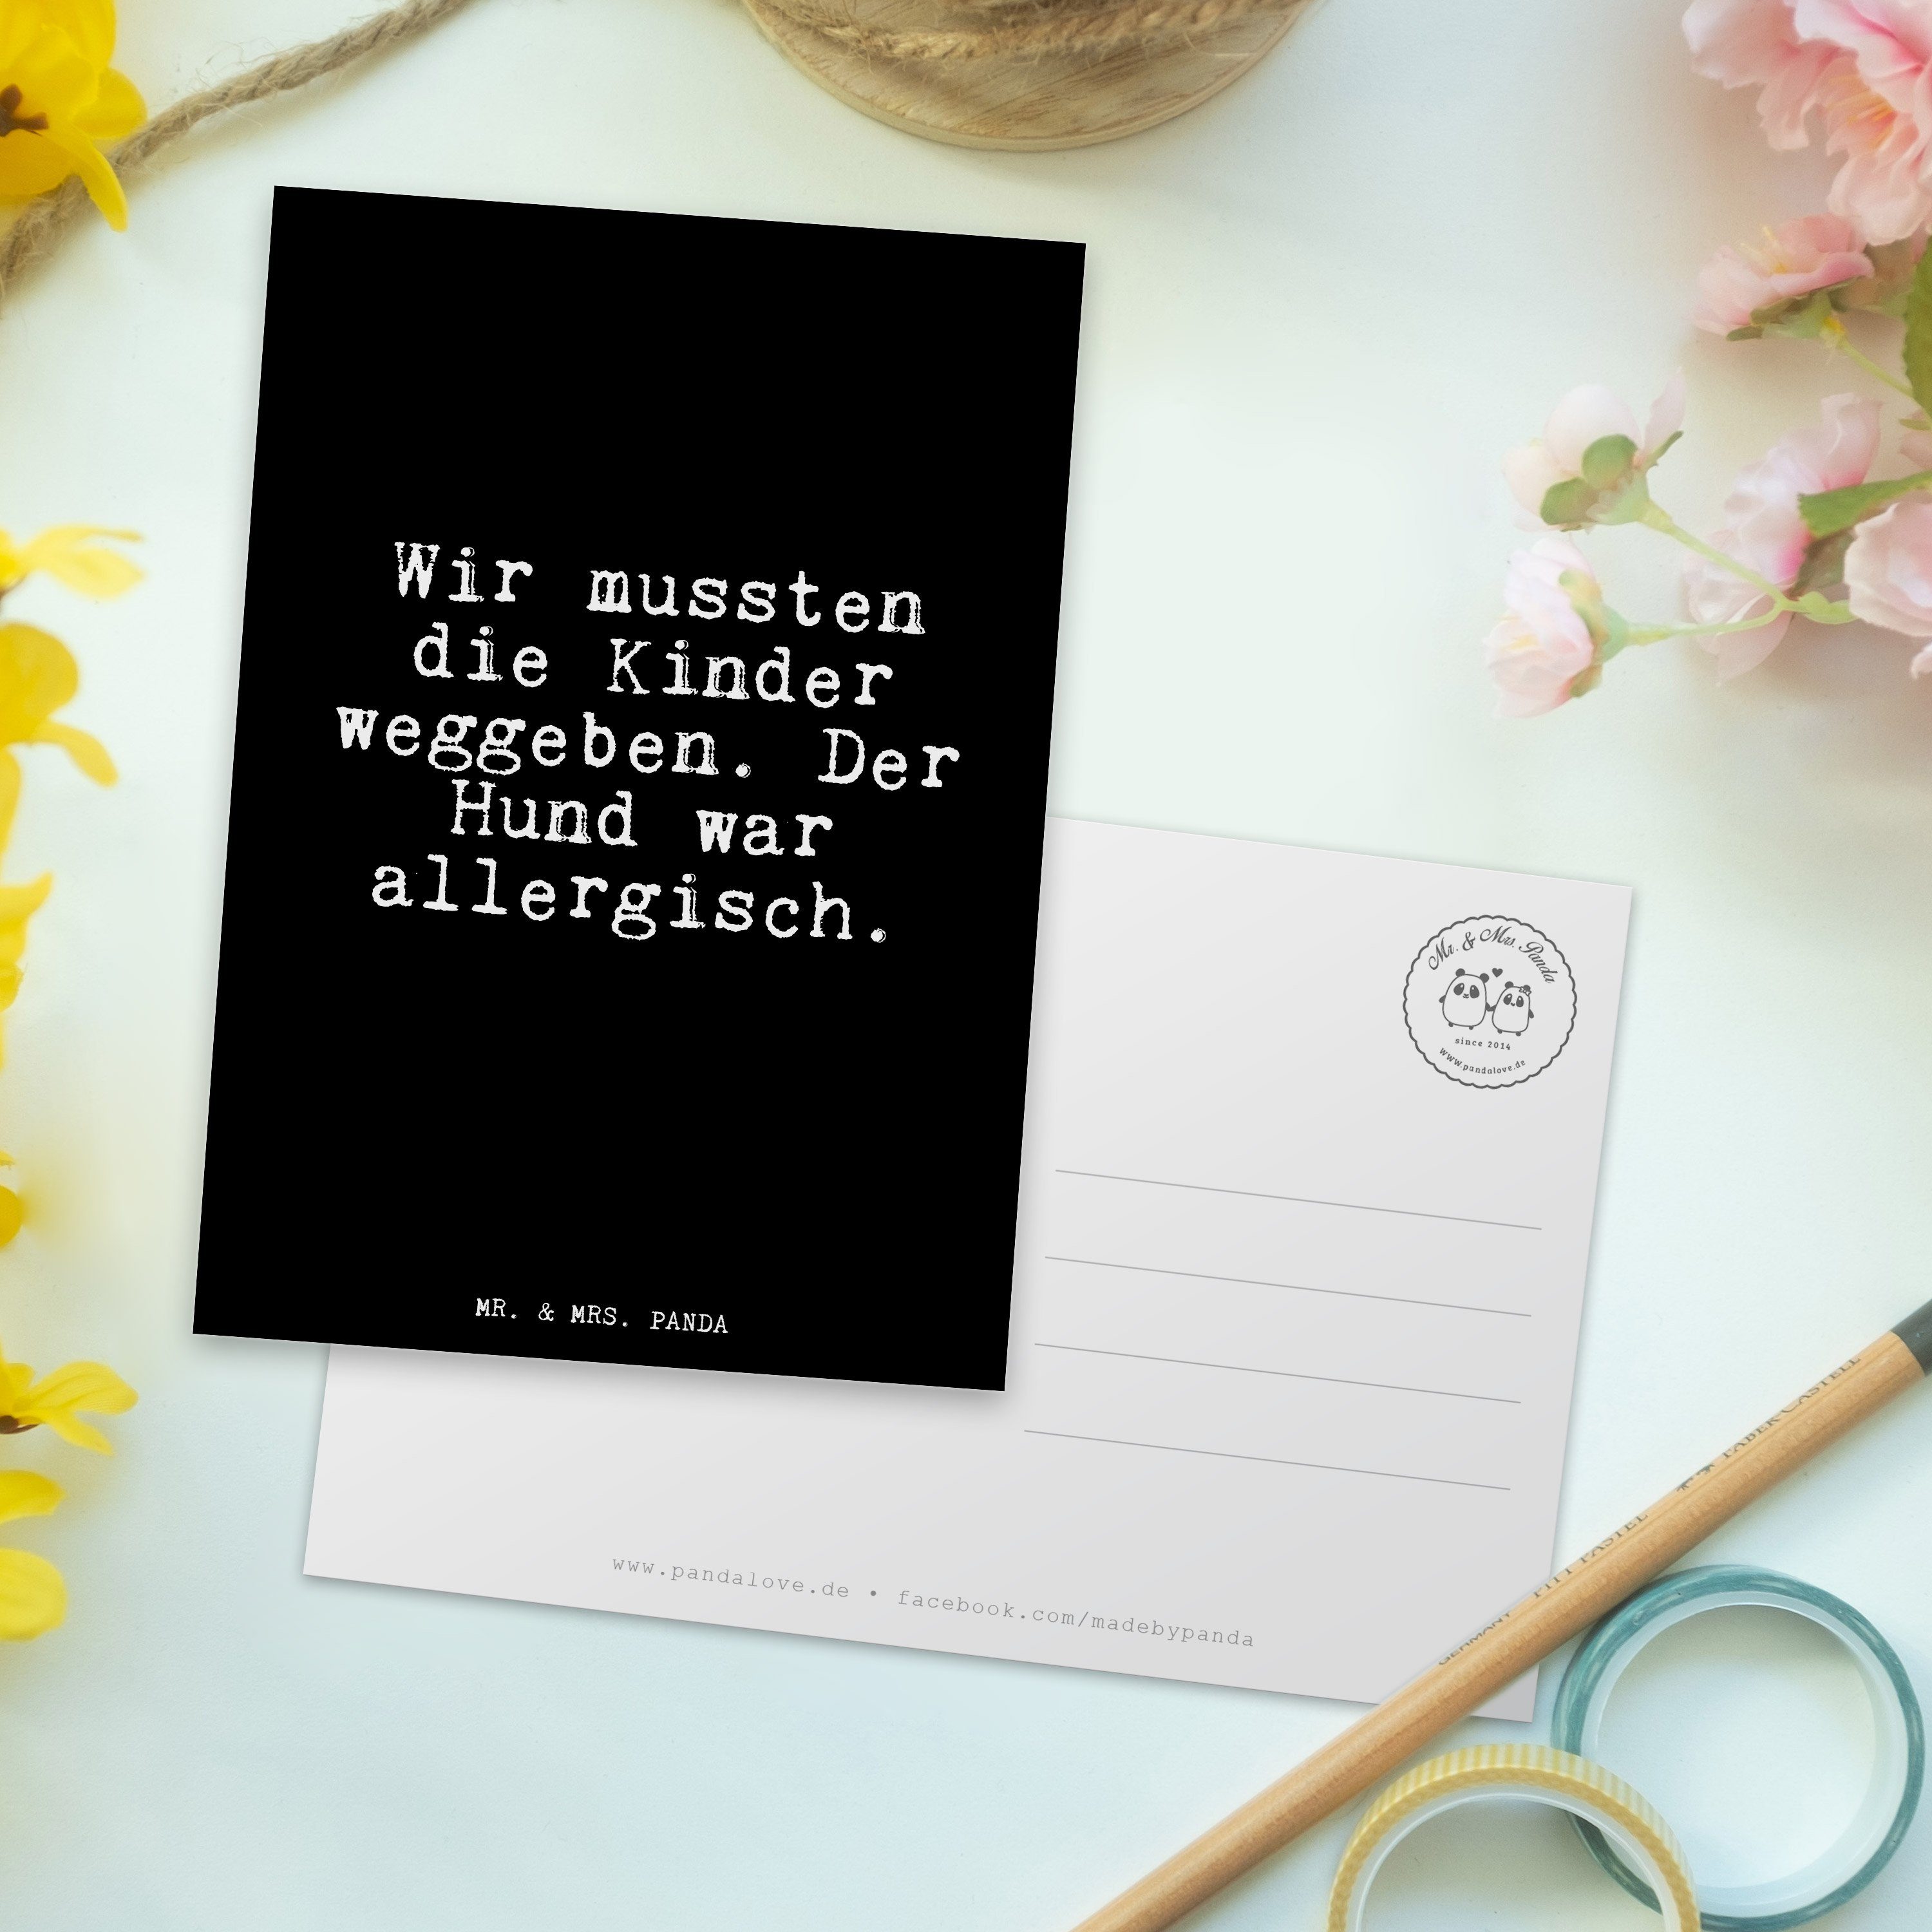 Mr. & Zitate, Schwarz Geschenk, Postkarte Panda Mrs. Wir Gesch die Kinder... - Spruch, - mussten